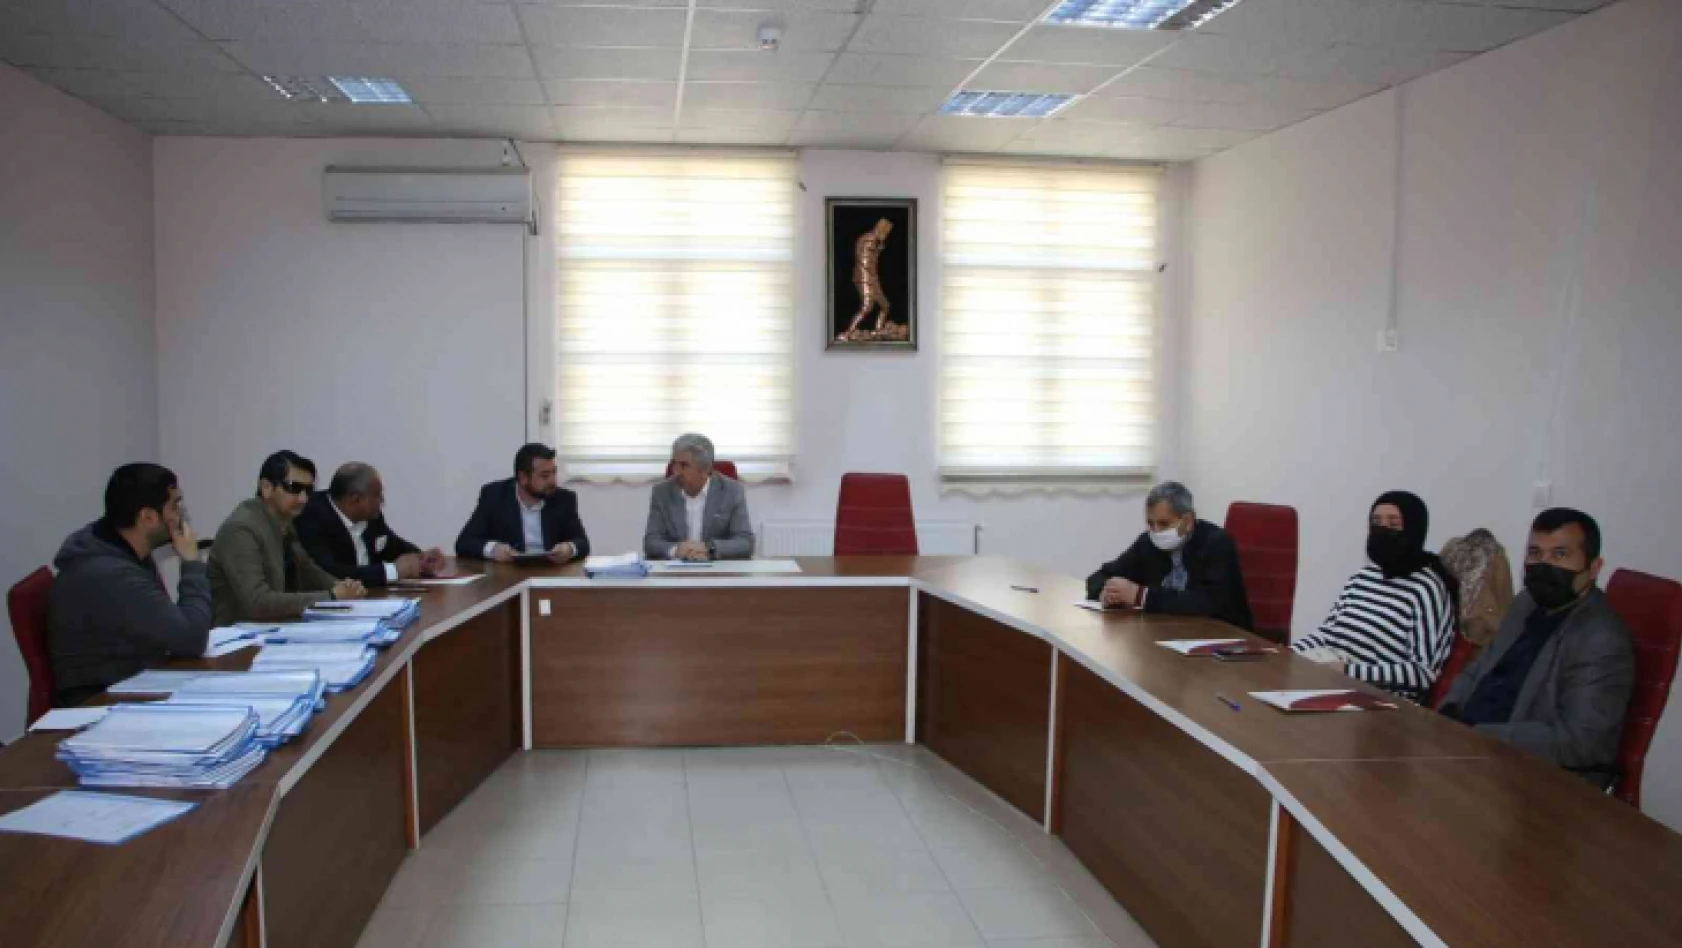 Elazığ'da Erişilebilirlik İzleme ve Denetleme Komisyon Toplantısı yapıldı